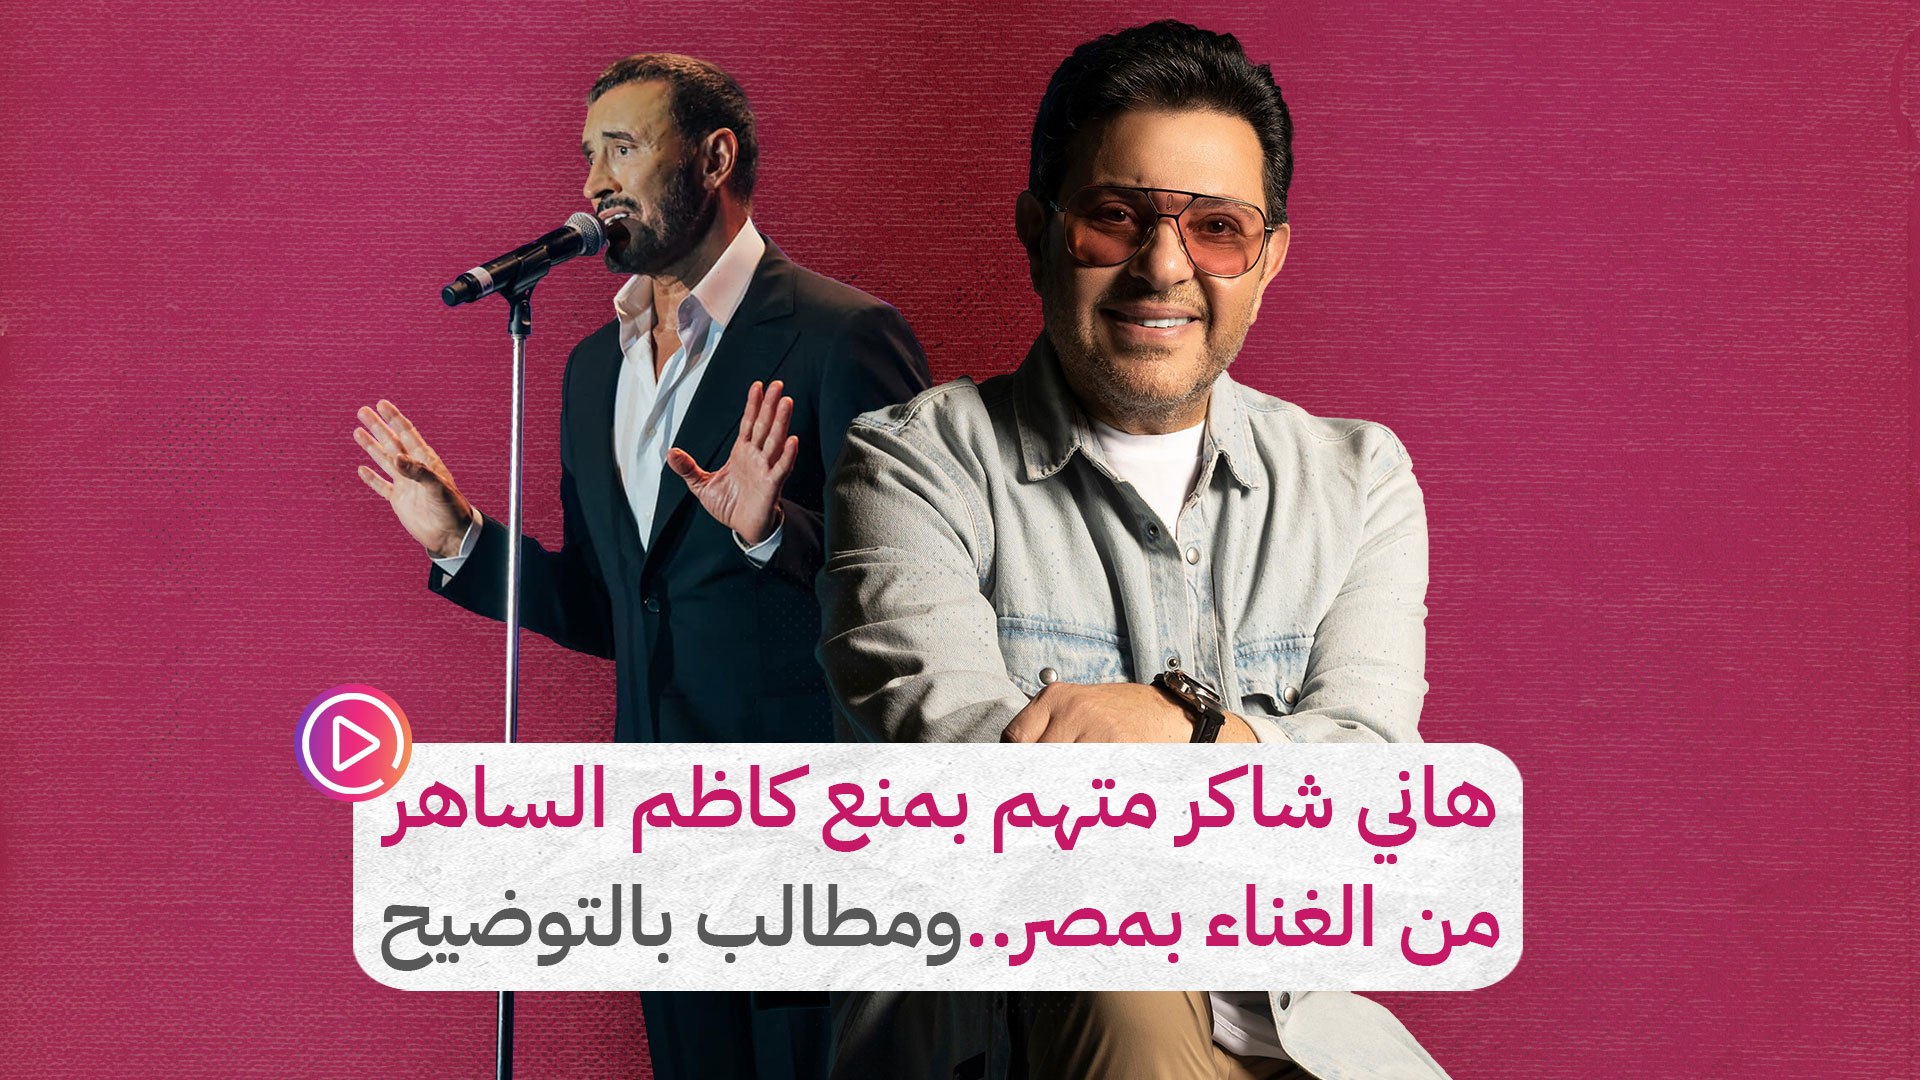 هاني شاكر متهم بمنع كاظم الساهر من الغناء بمصر..ومطالب بالتوضيح‎‎ - فيديو  Dailymotion